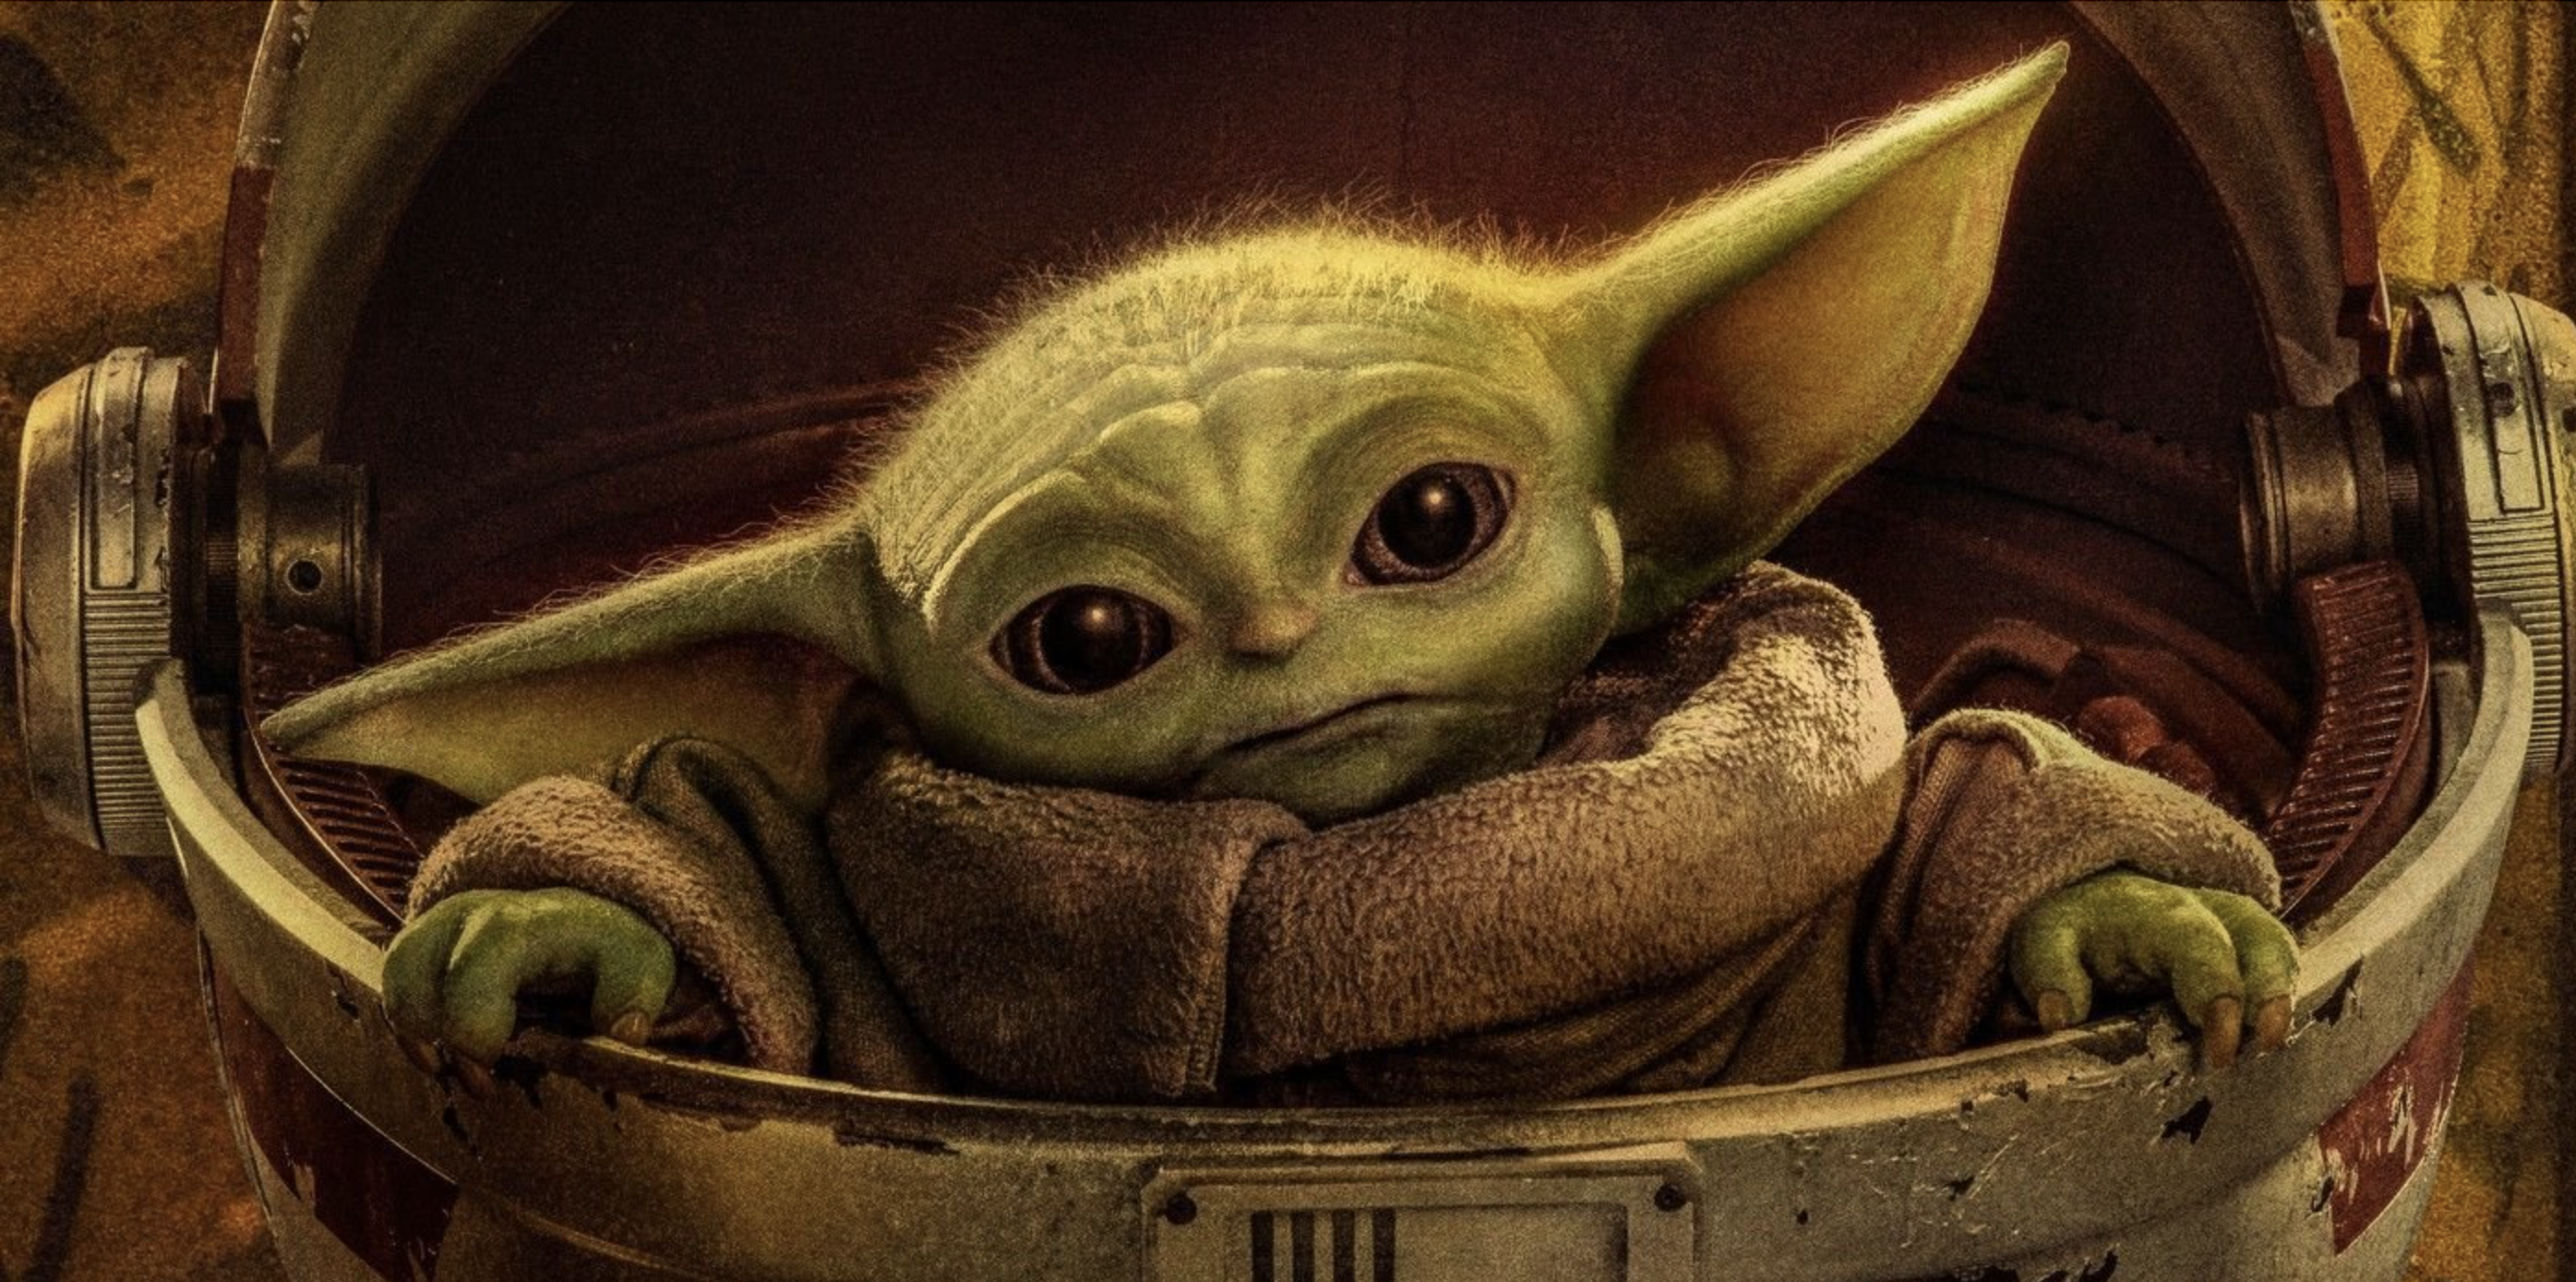 The Mandalorian : un fan compile les bruits de "Baby Yoda" et c'est super mignon